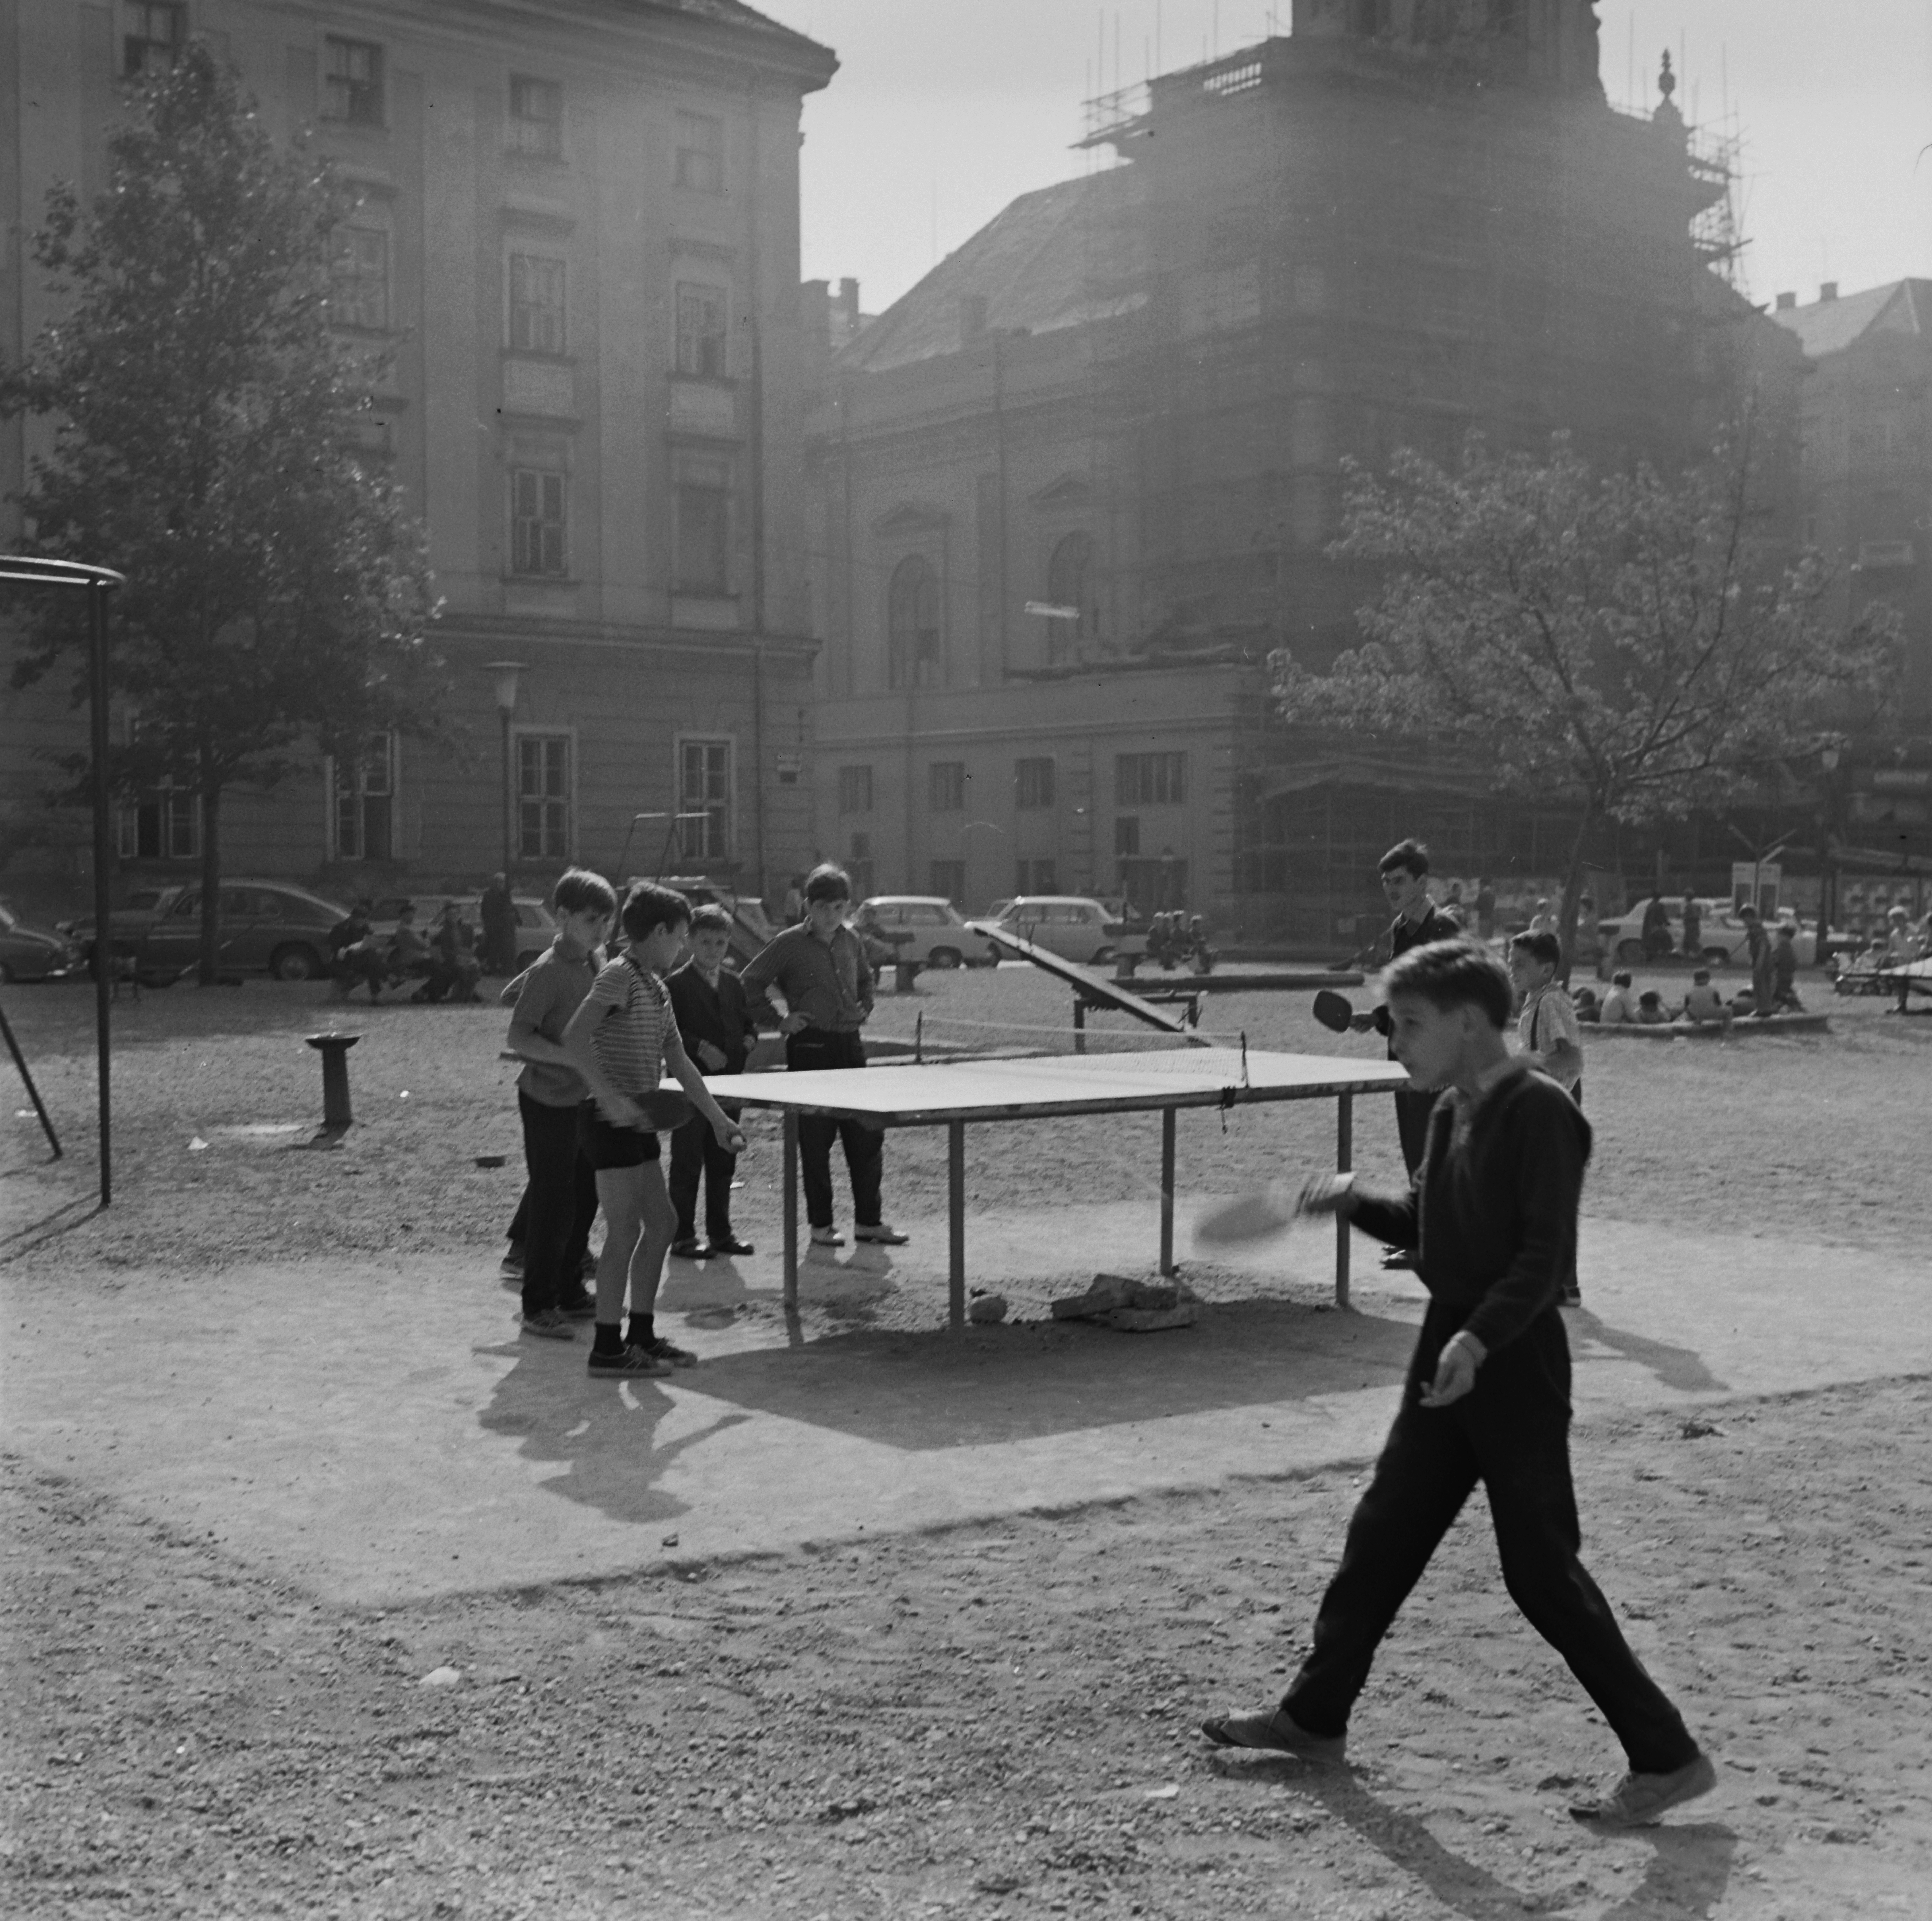 Fortepan / Inkey Tibor-Játszótér a Szervita (Martinelli) tér mellett, a Bárczy István utca 2. helyén, a háttérben balra a Városháza, jobbra a Belvárosi Szent Anna-templom (Szervita templom) 1960-ban